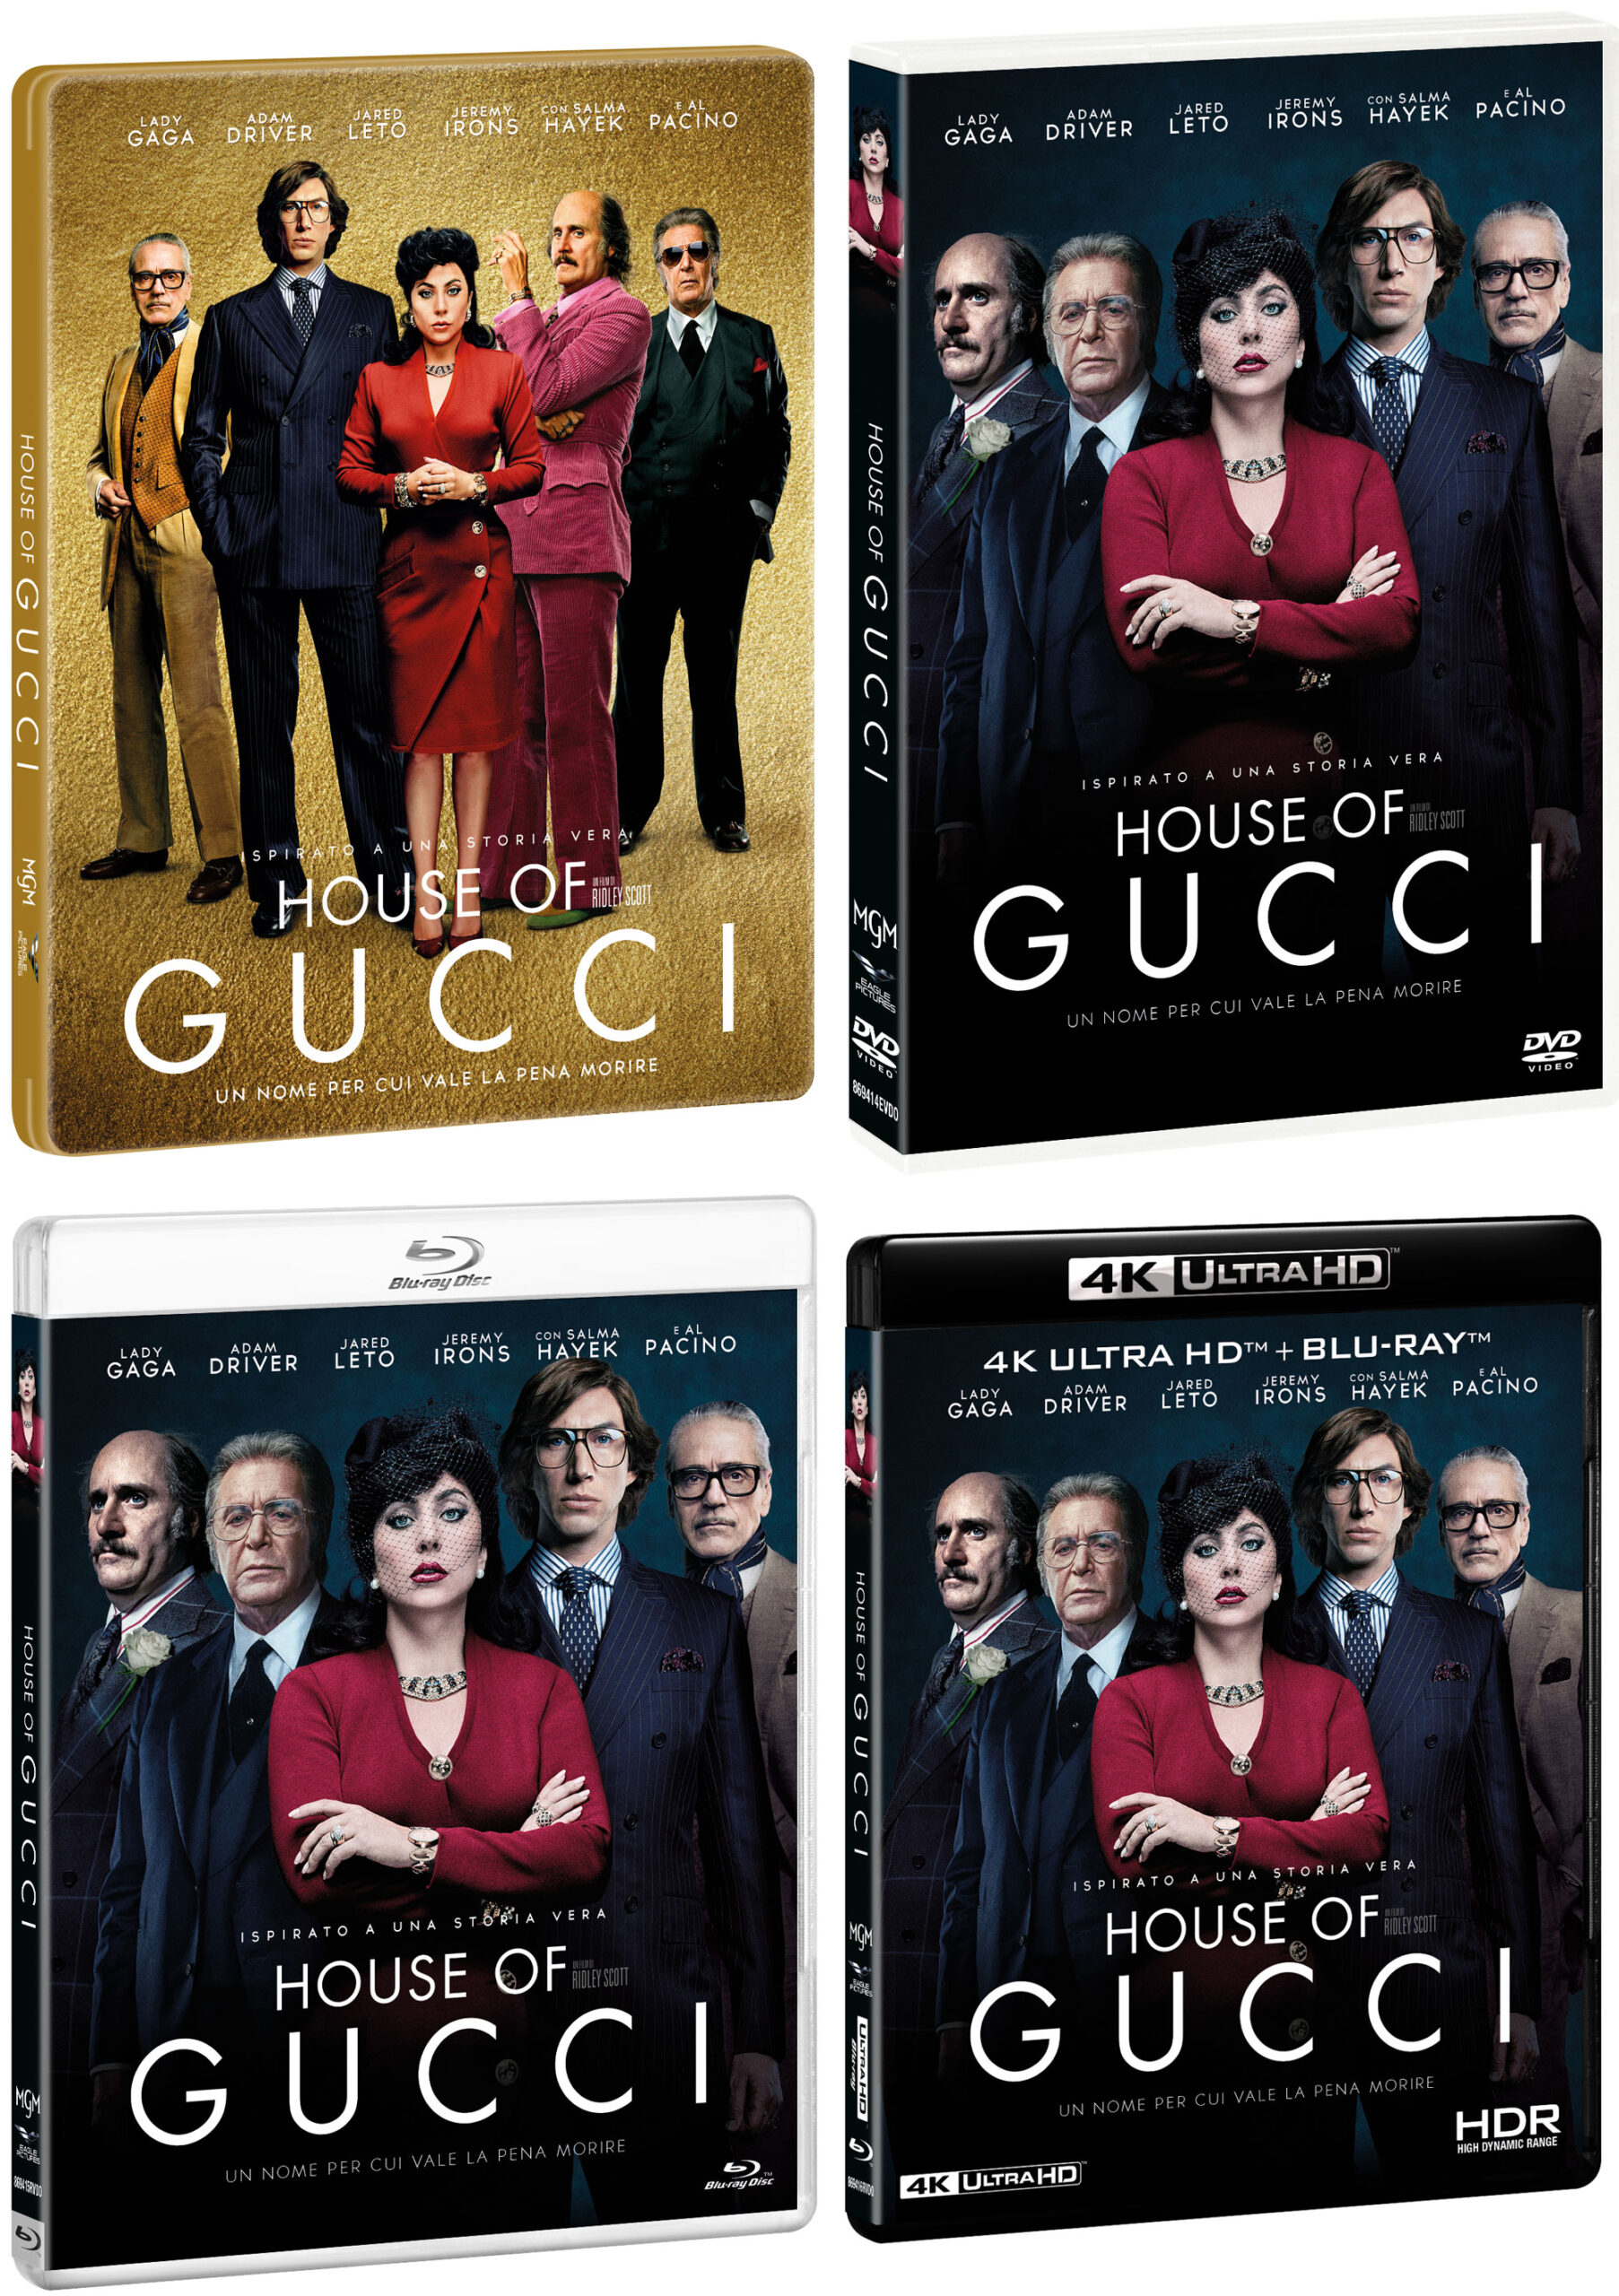 House of Gucci di Ridley Scott in DVD, Blu-ray, e Steelbook